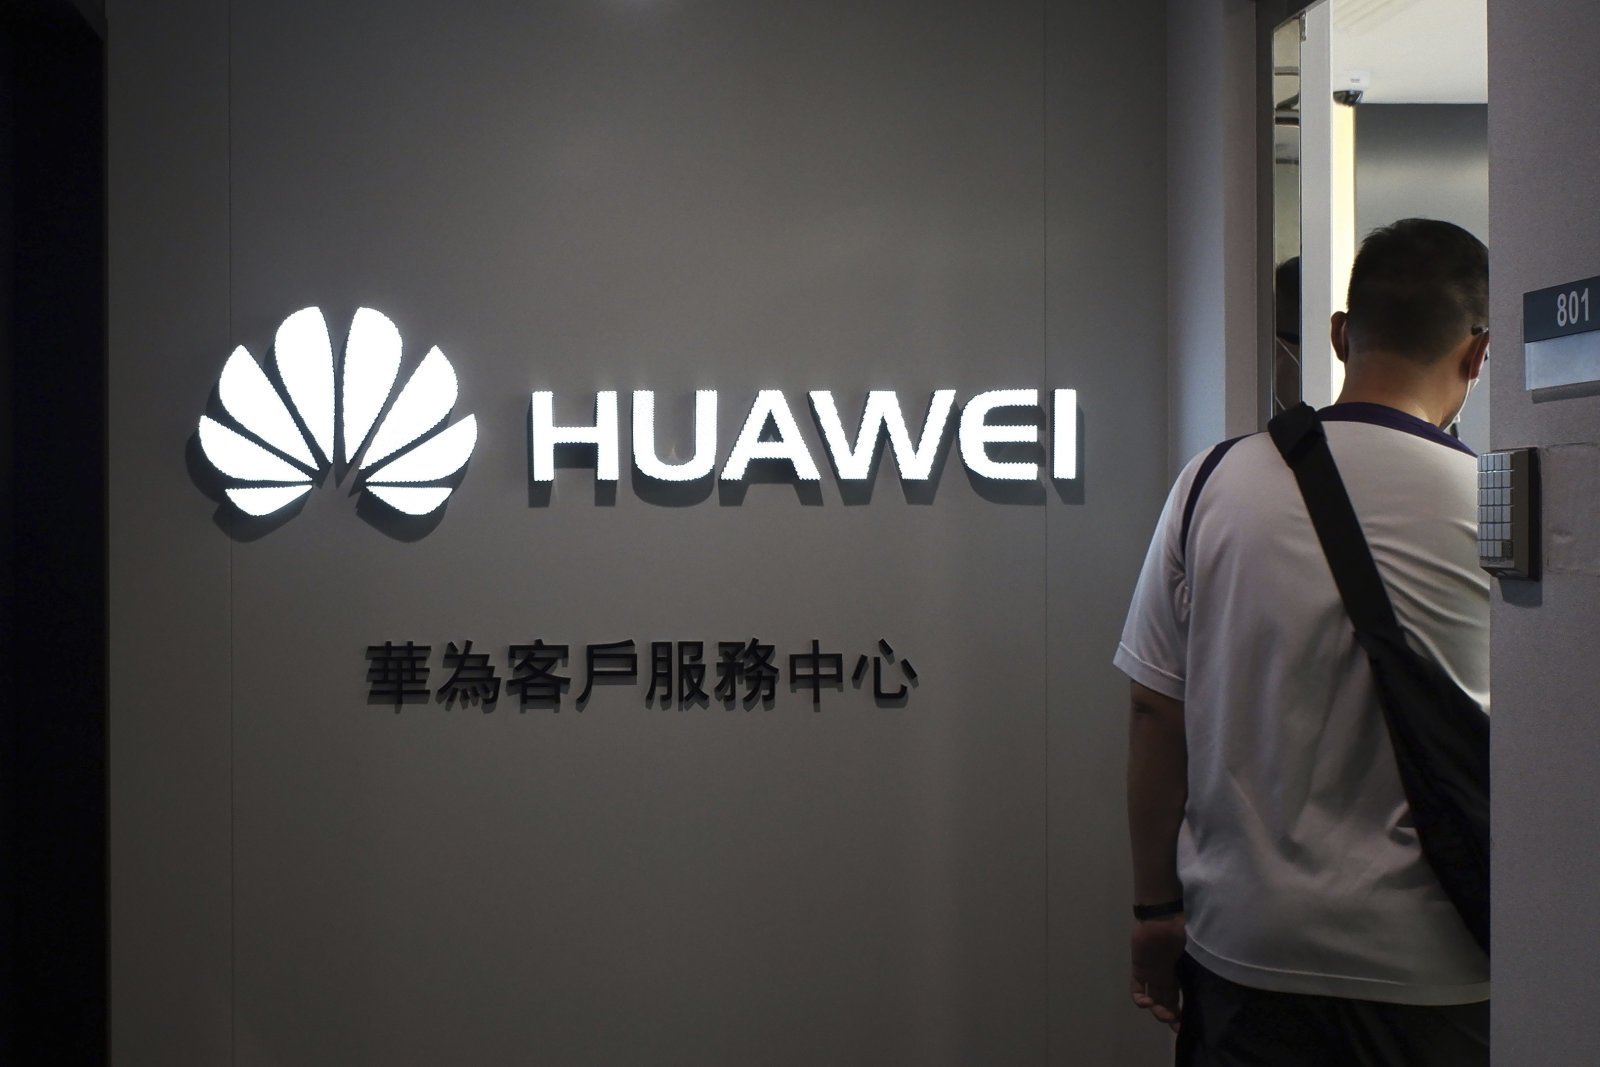 สินค้าใหม่จากการพัฒนาร่วมกันของ Huawei-Google ถูกขัดขวางไม่ได้ขายซะงั้น